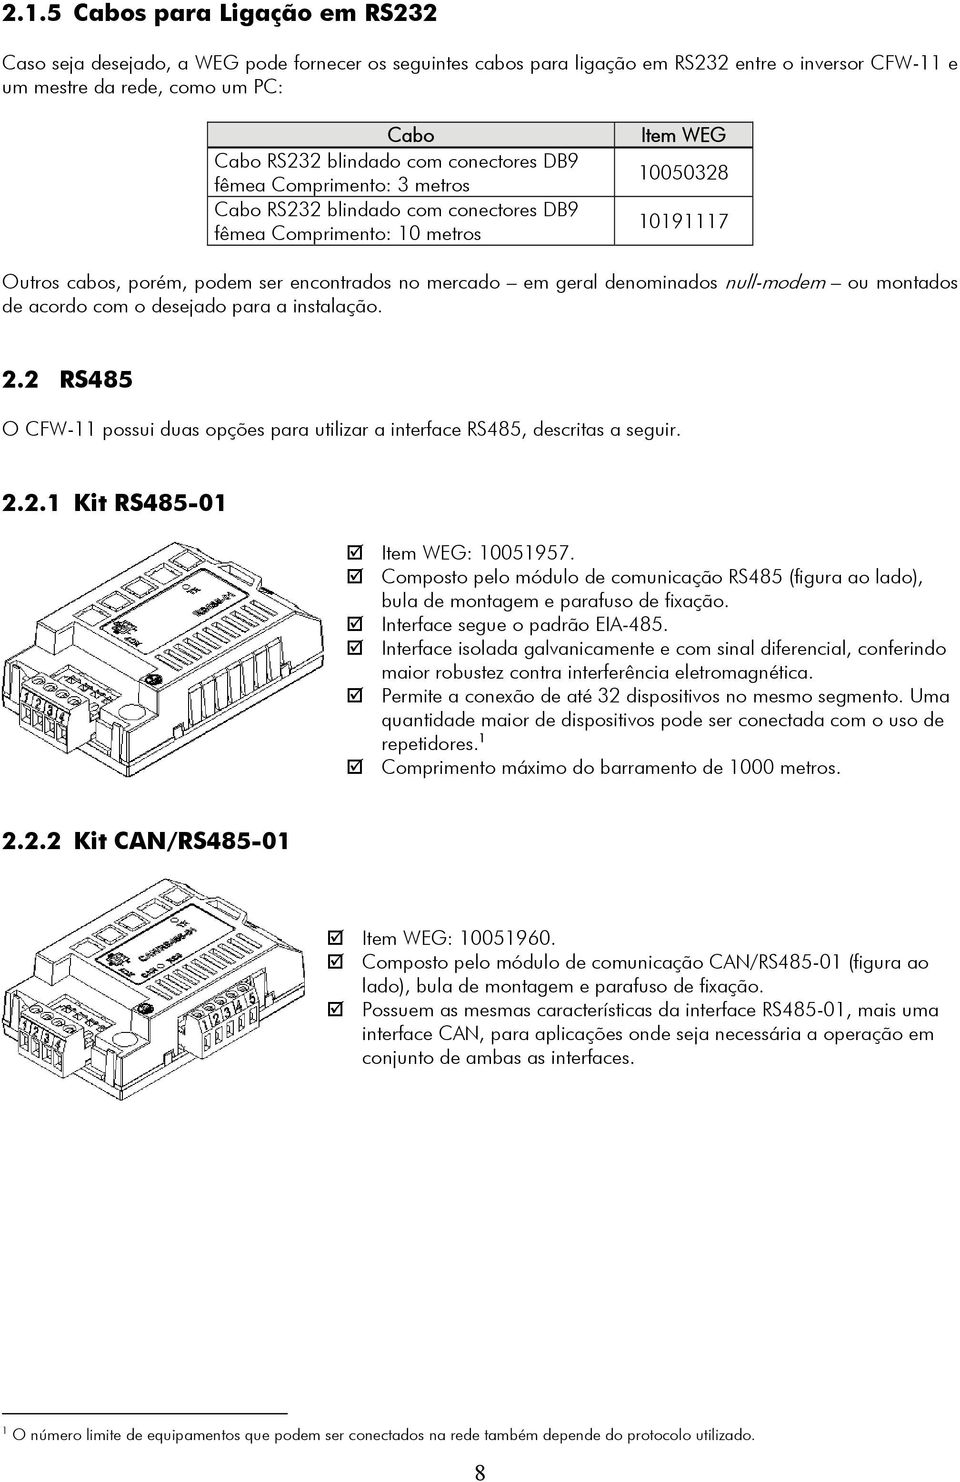 geral denominados null-modem ou montados de acordo com o desejado para a instalação. 2.2 RS485 O CFW-11 possui duas opções para utilizar a interface RS485, descritas a seguir. 2.2.1 Kit RS485-01 Item WEG: 10051957.